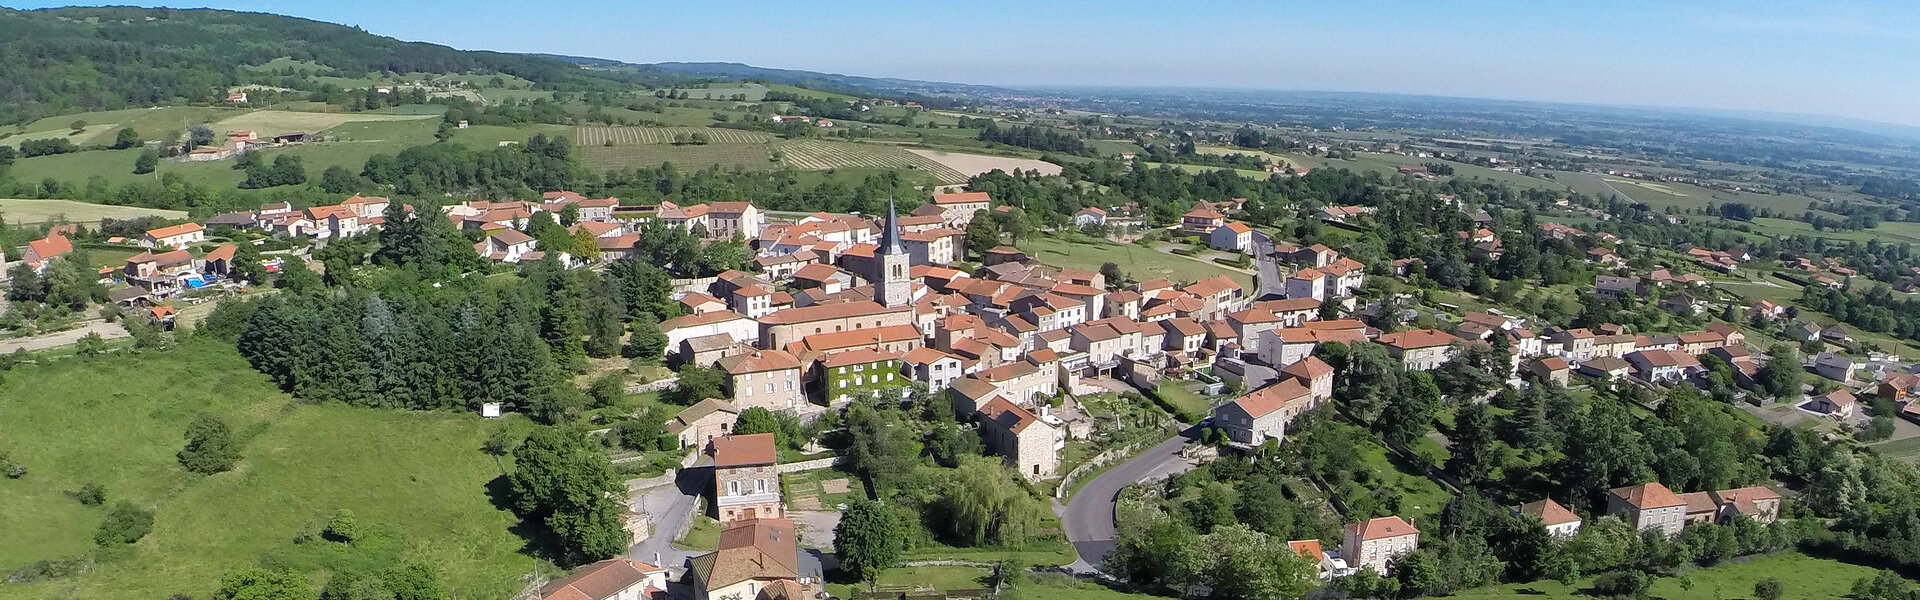 Histoire Patrimoine Commune Mairie Villemontais Loire Auvergne